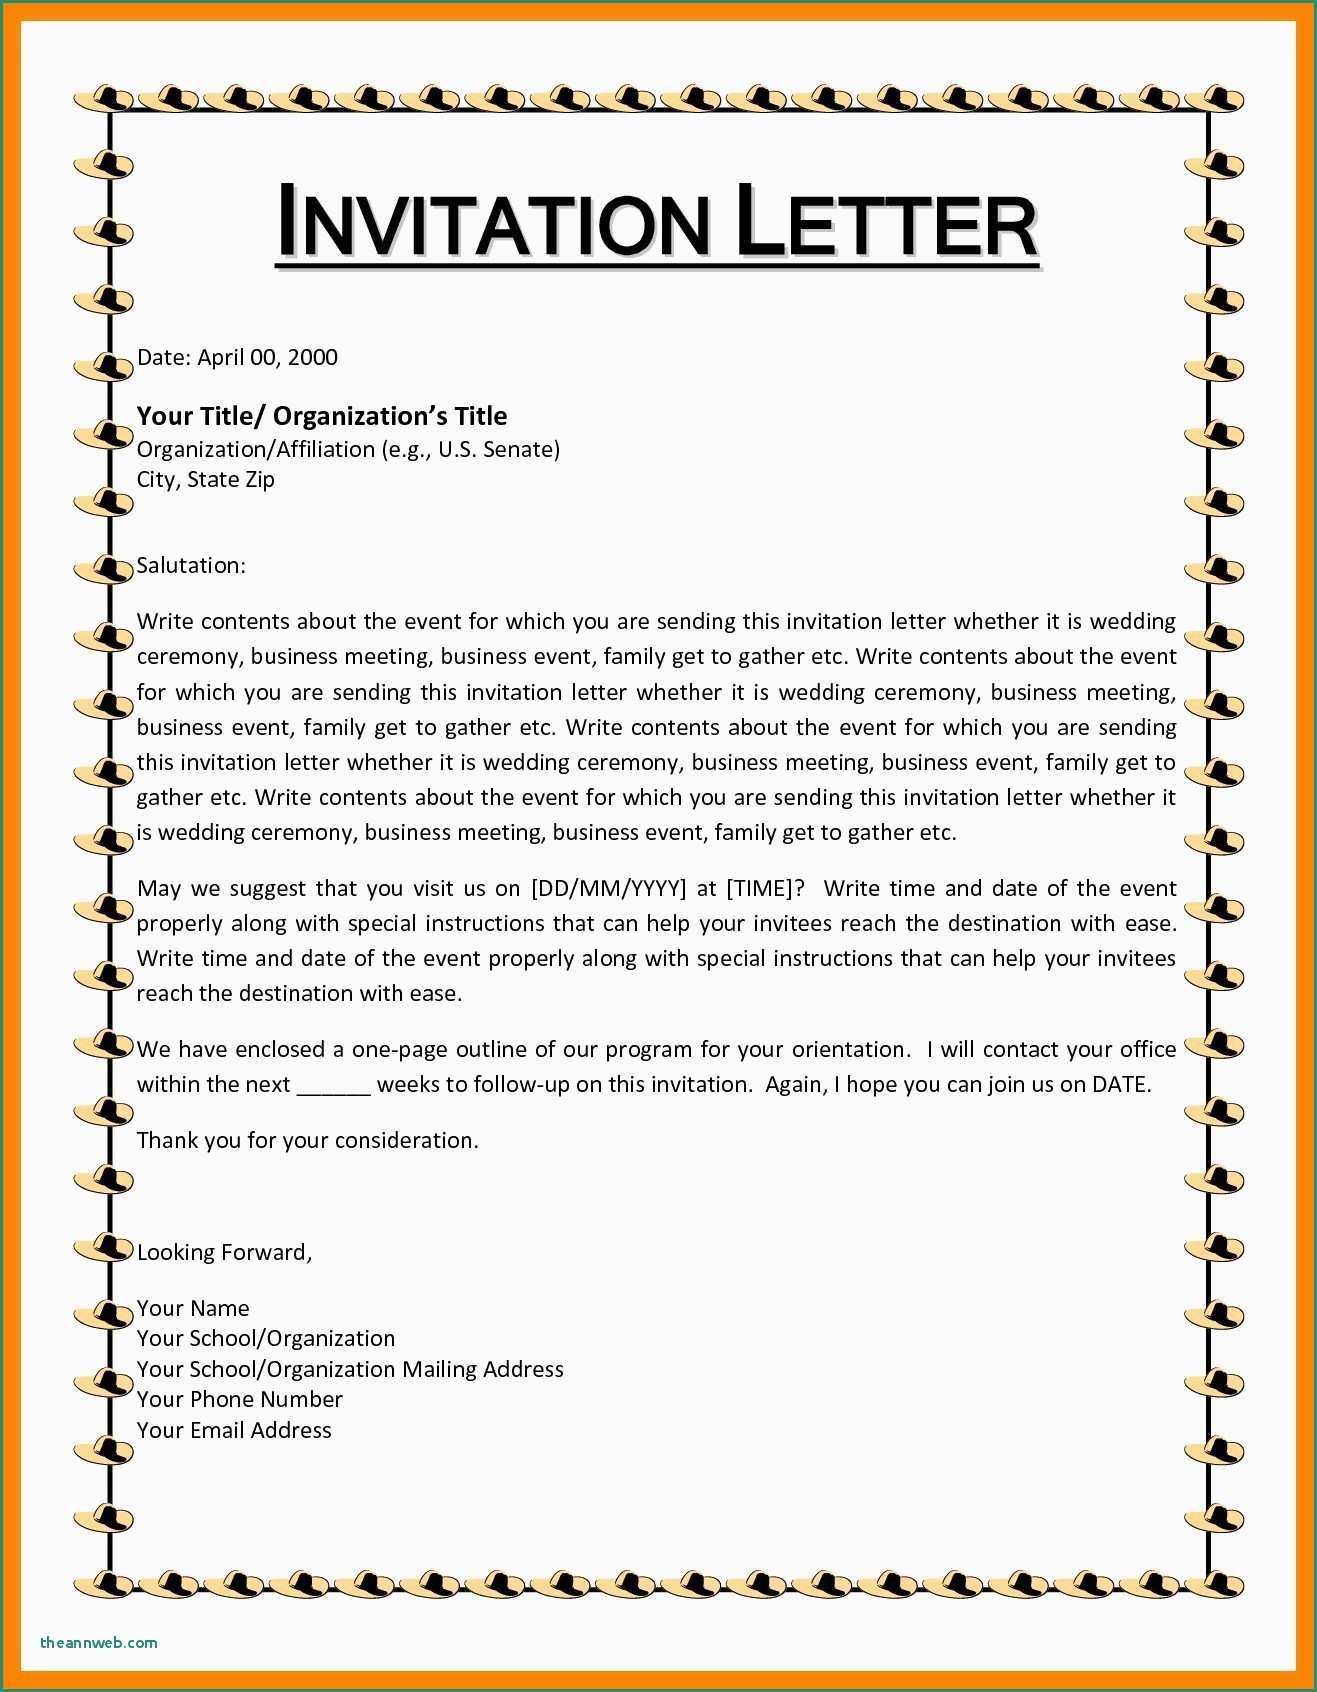 parent visit invitation letter